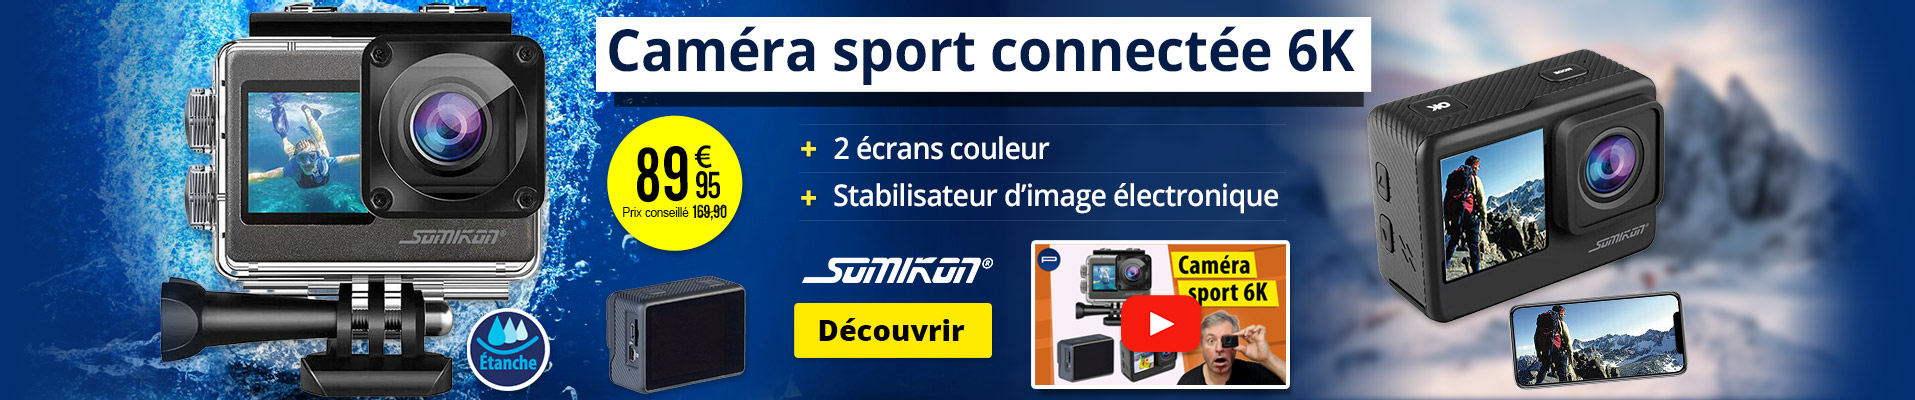 Caméra sport connectée 6K DV-950.WiFi avec 2 écrans couleur Somikon - ZX5437